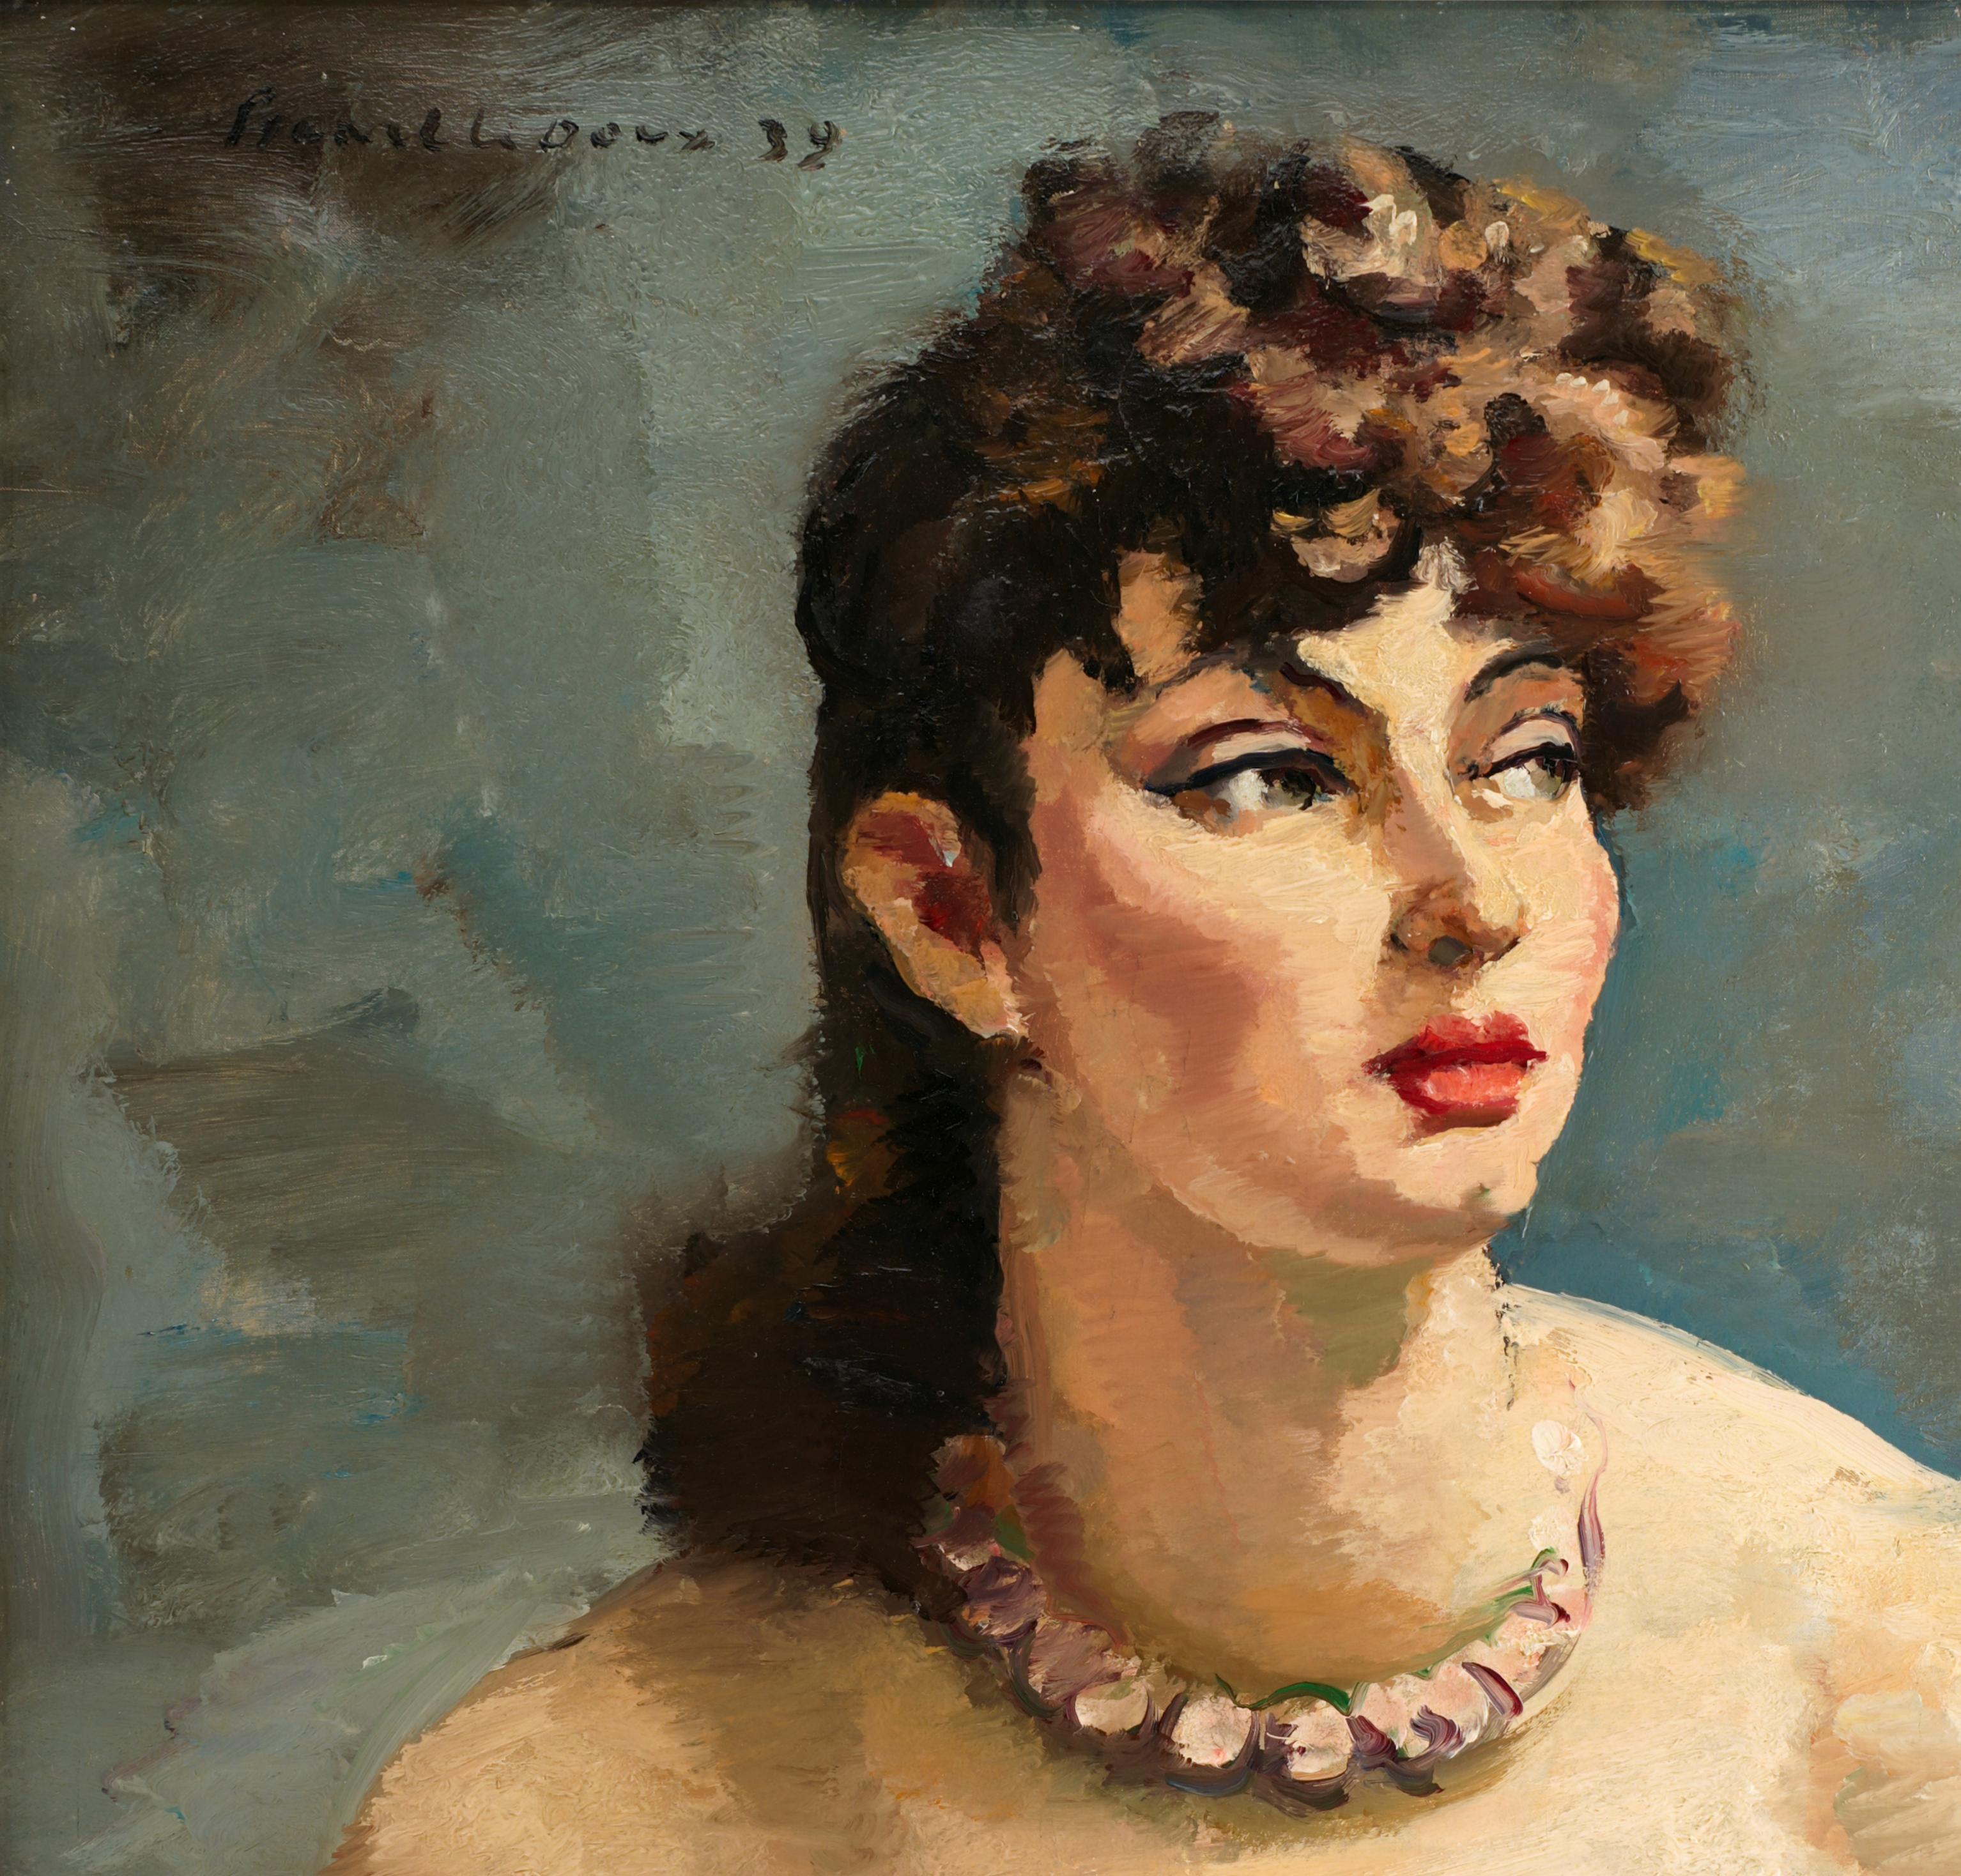 Charles PICART LE DOUX, Das schöne Mädchen, Öl auf Leinwand, 1939 (Post-Impressionismus), Painting, von Charles Picart le Doux